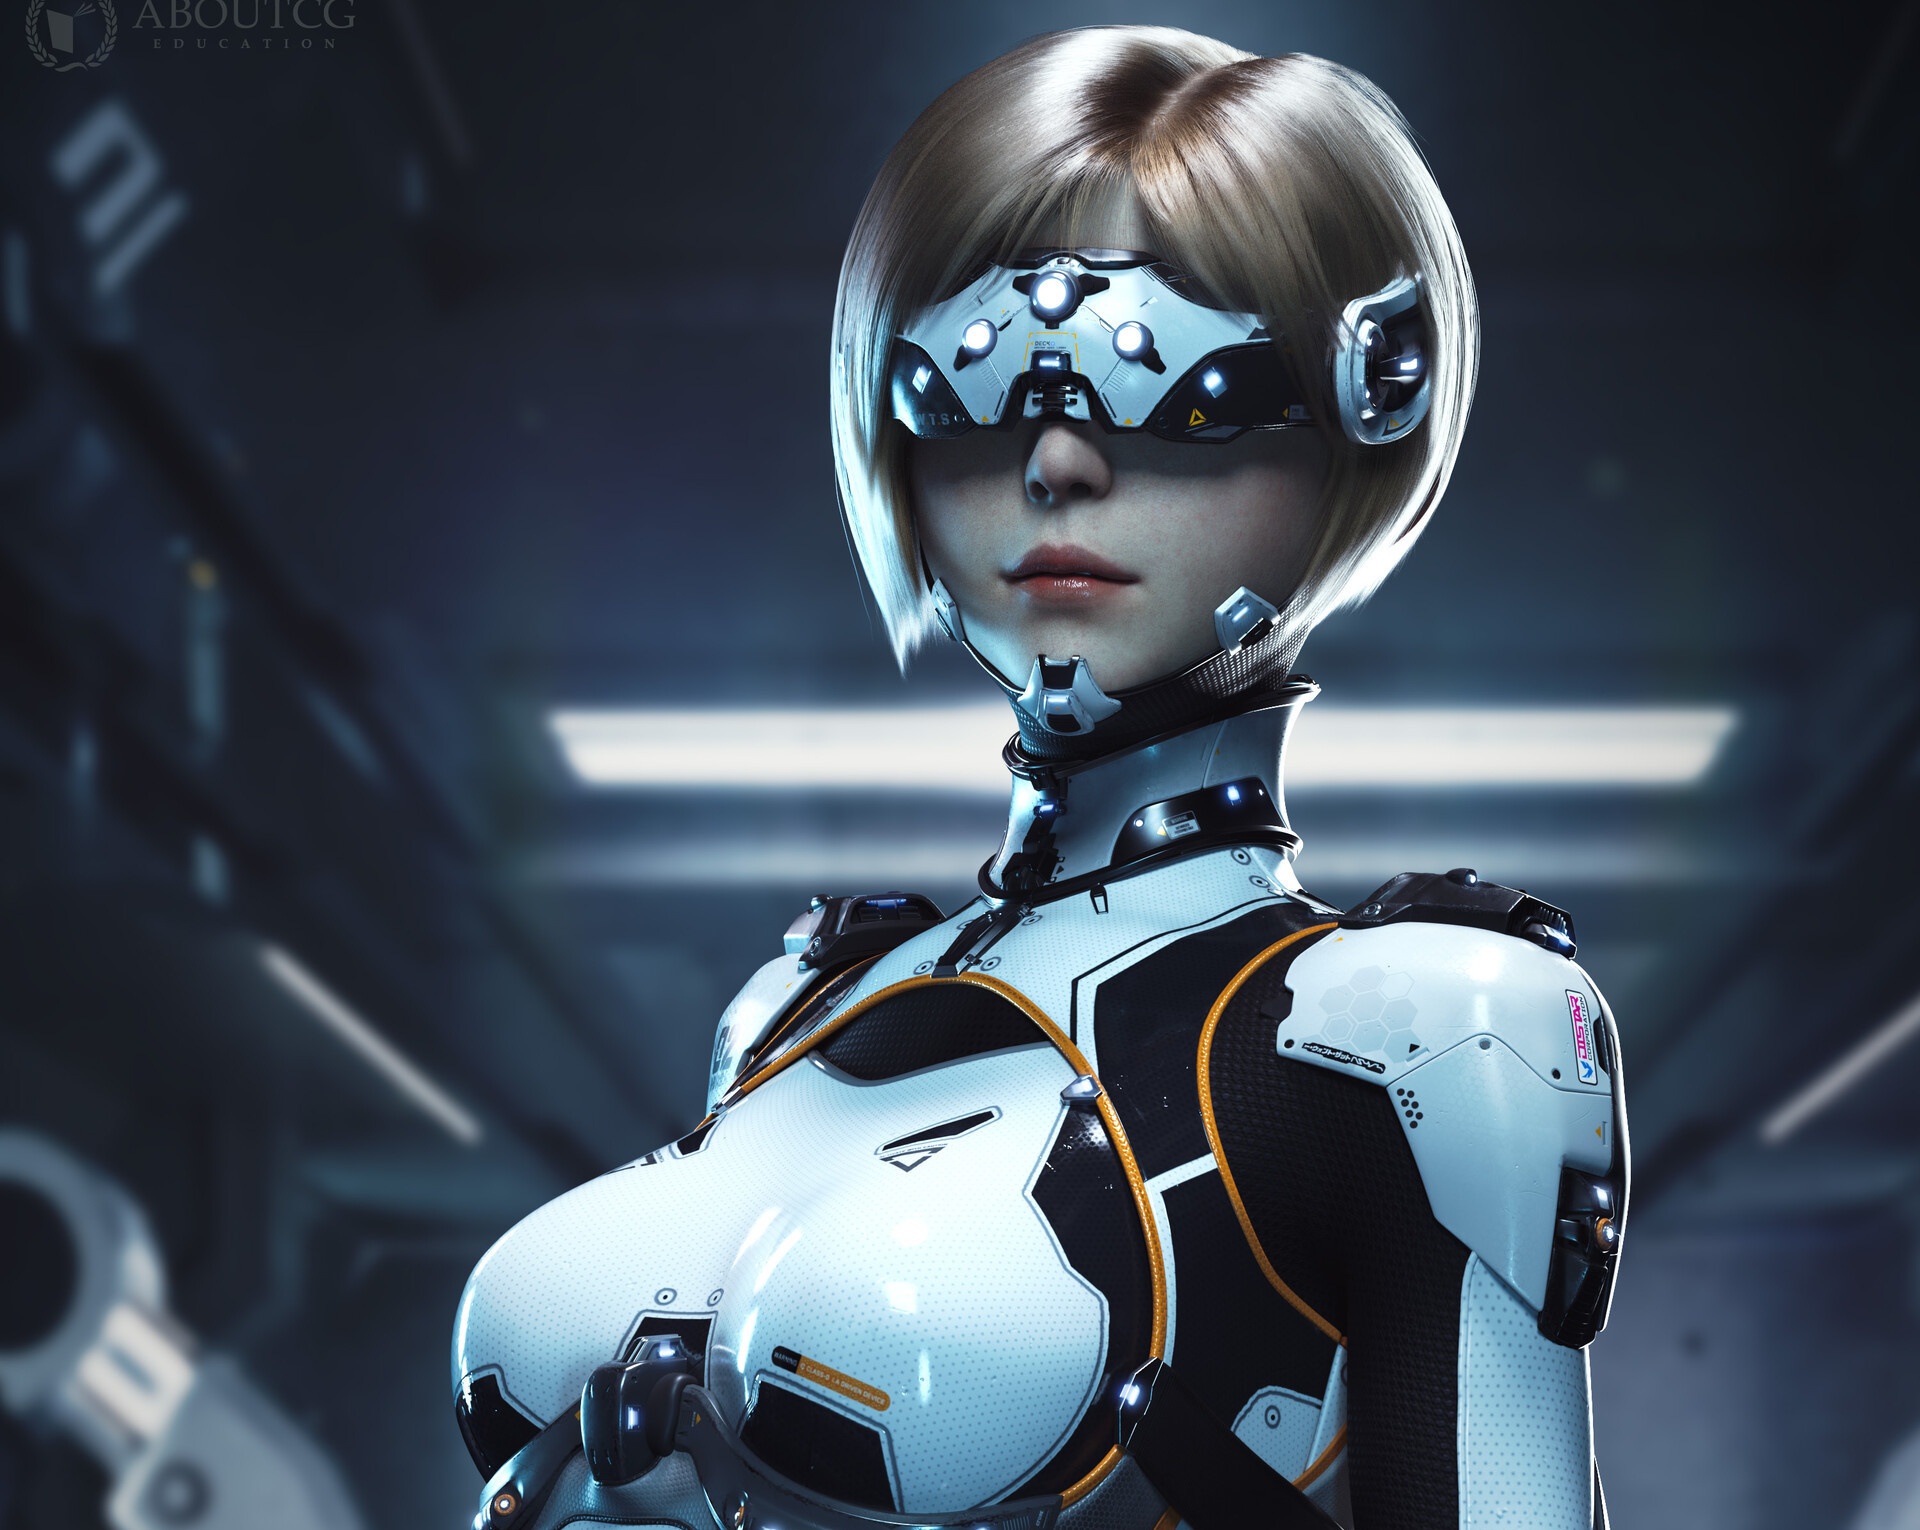 General 1920x1530 cyborg Gynoid women science fiction futuristic artwork digital art fantasy art